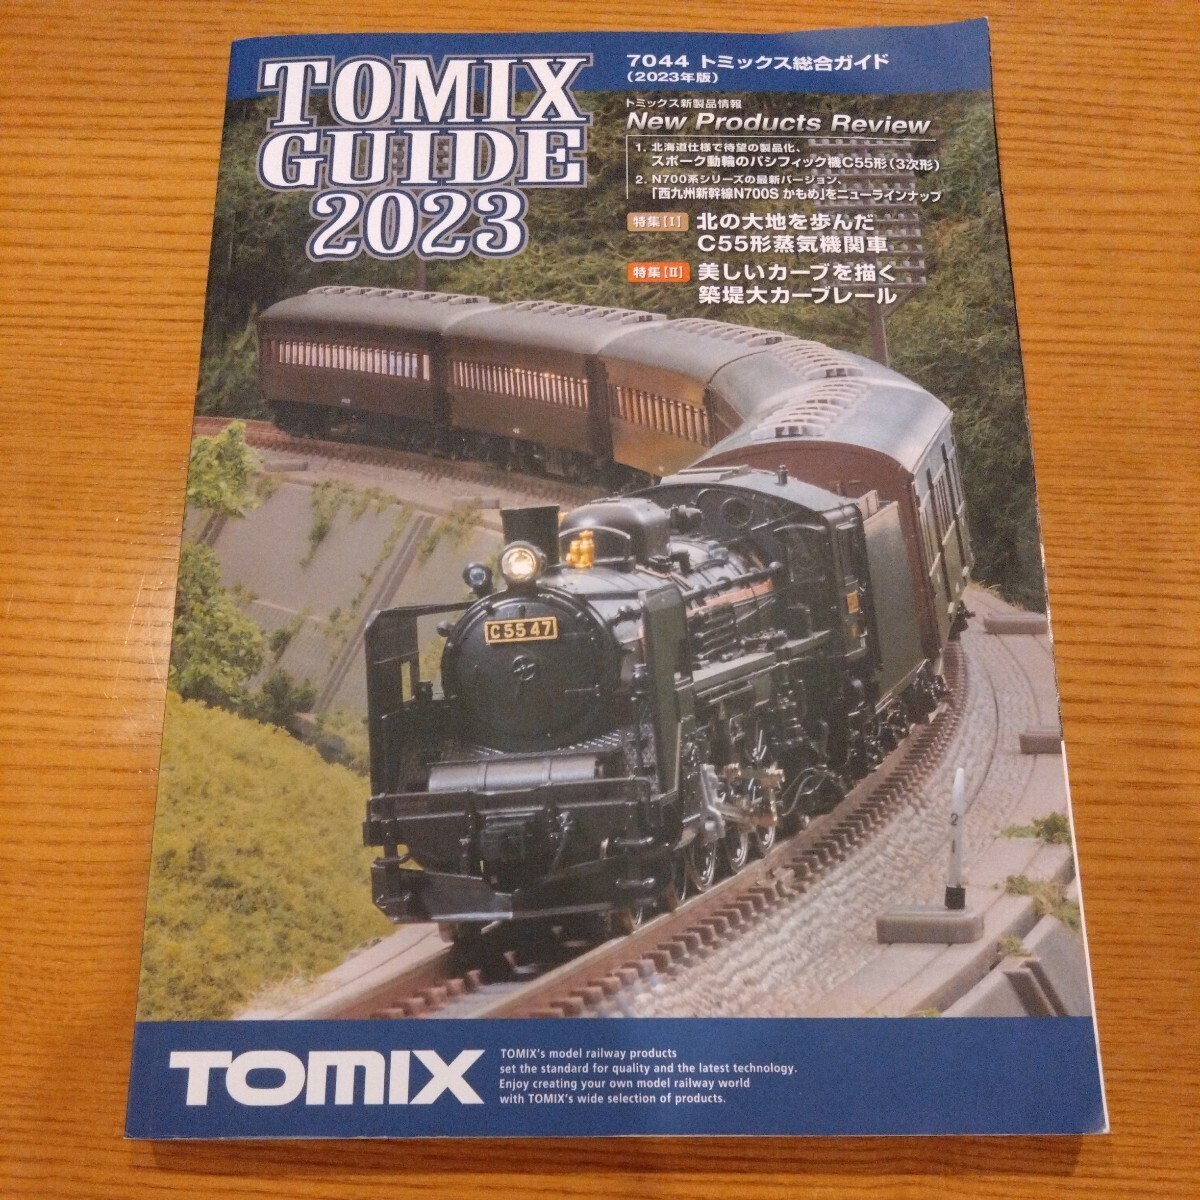 【新品同様】7044 トミックス総合ガイド 2023年版 鉄道模型カタログ Nゲージ HOゲージ TOMIX GUIDE 2023_画像1